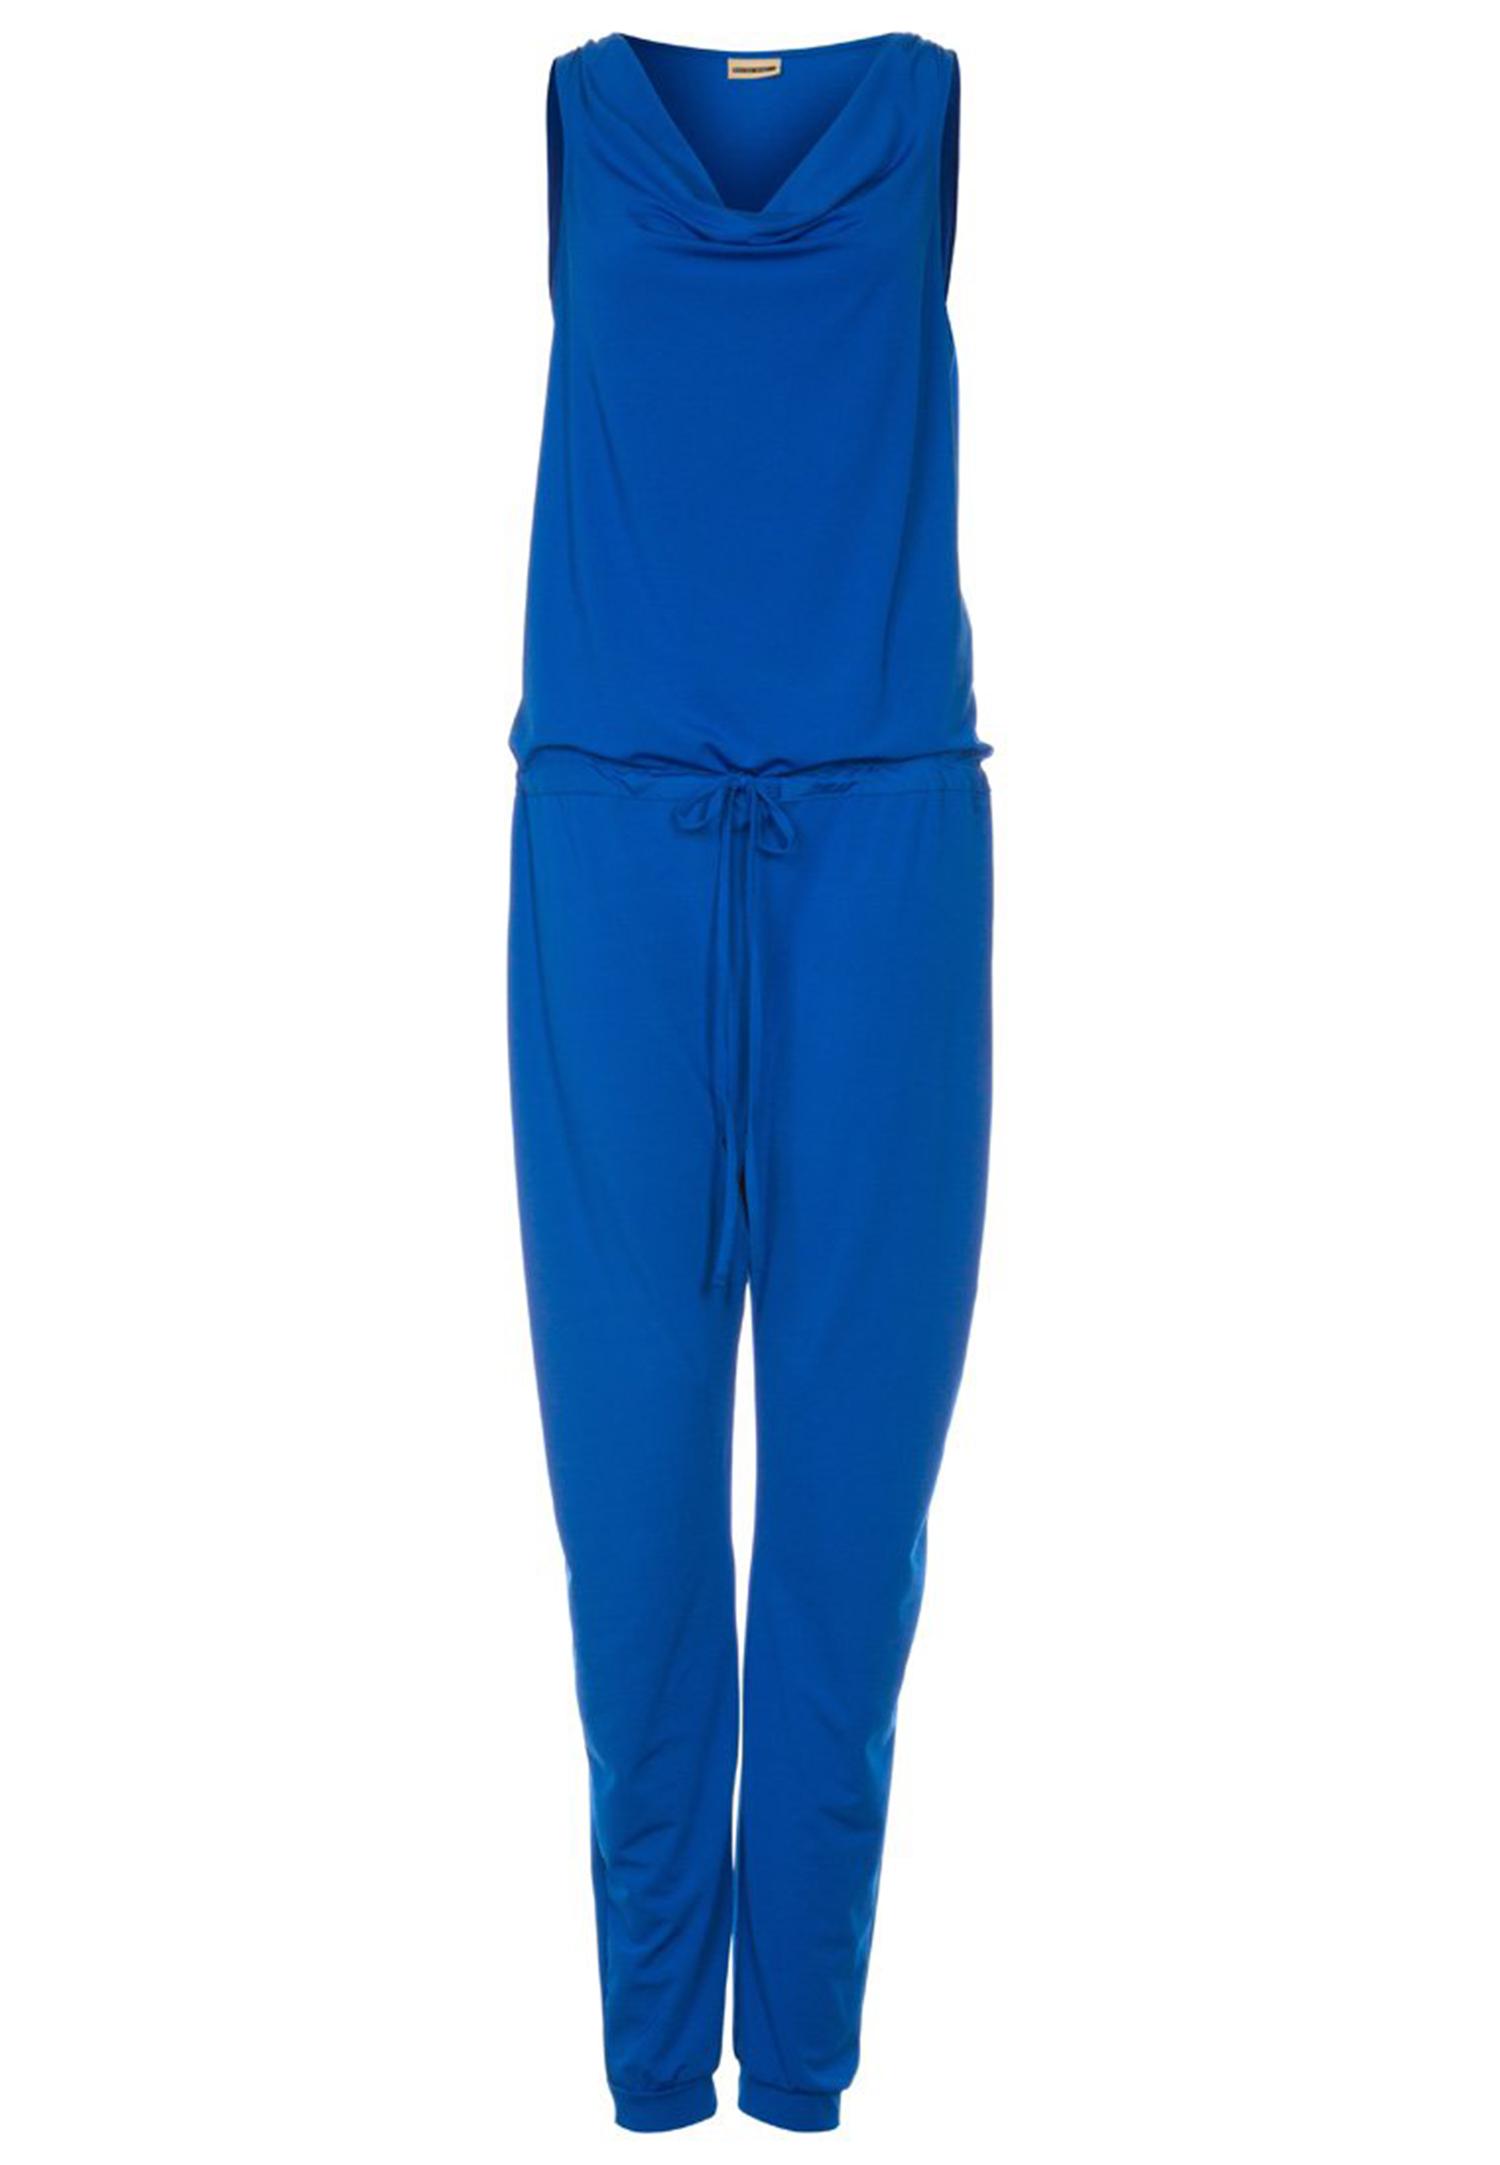 Combinaison bleue - Vero Moda - 39,95€